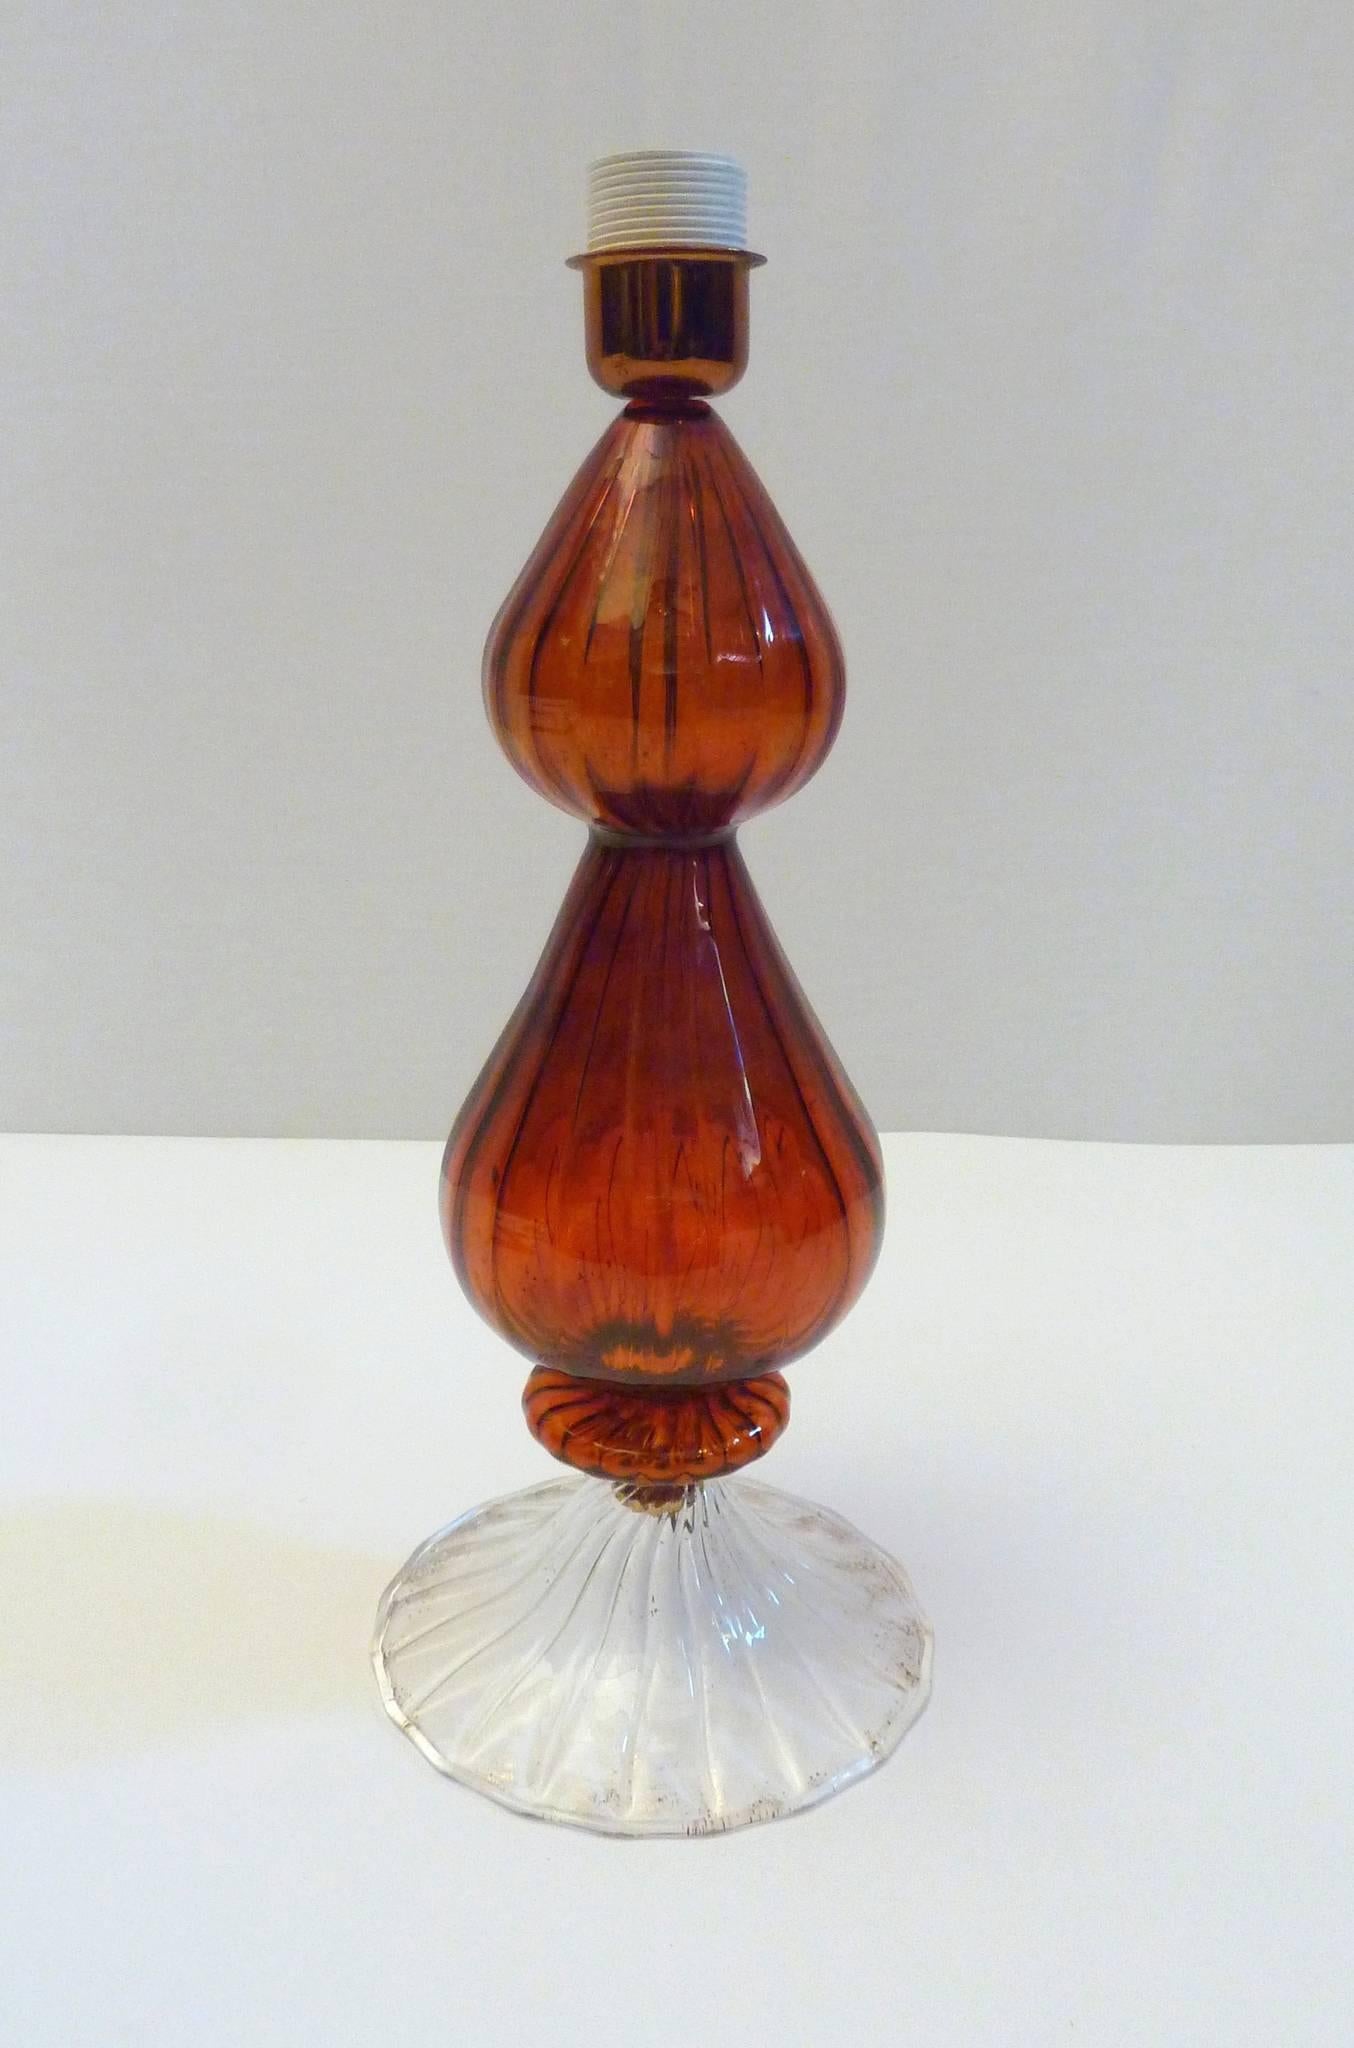 Lampe de table en verre de Murano faite à la main, en verre ambré et transparent avec des mouchetures dorées dans la base. Livré avec un abat-jour en coton blanc tout neuf. La hauteur totale avec l'abat-jour est de 60 cm. Le diamètre de l'abat-jour